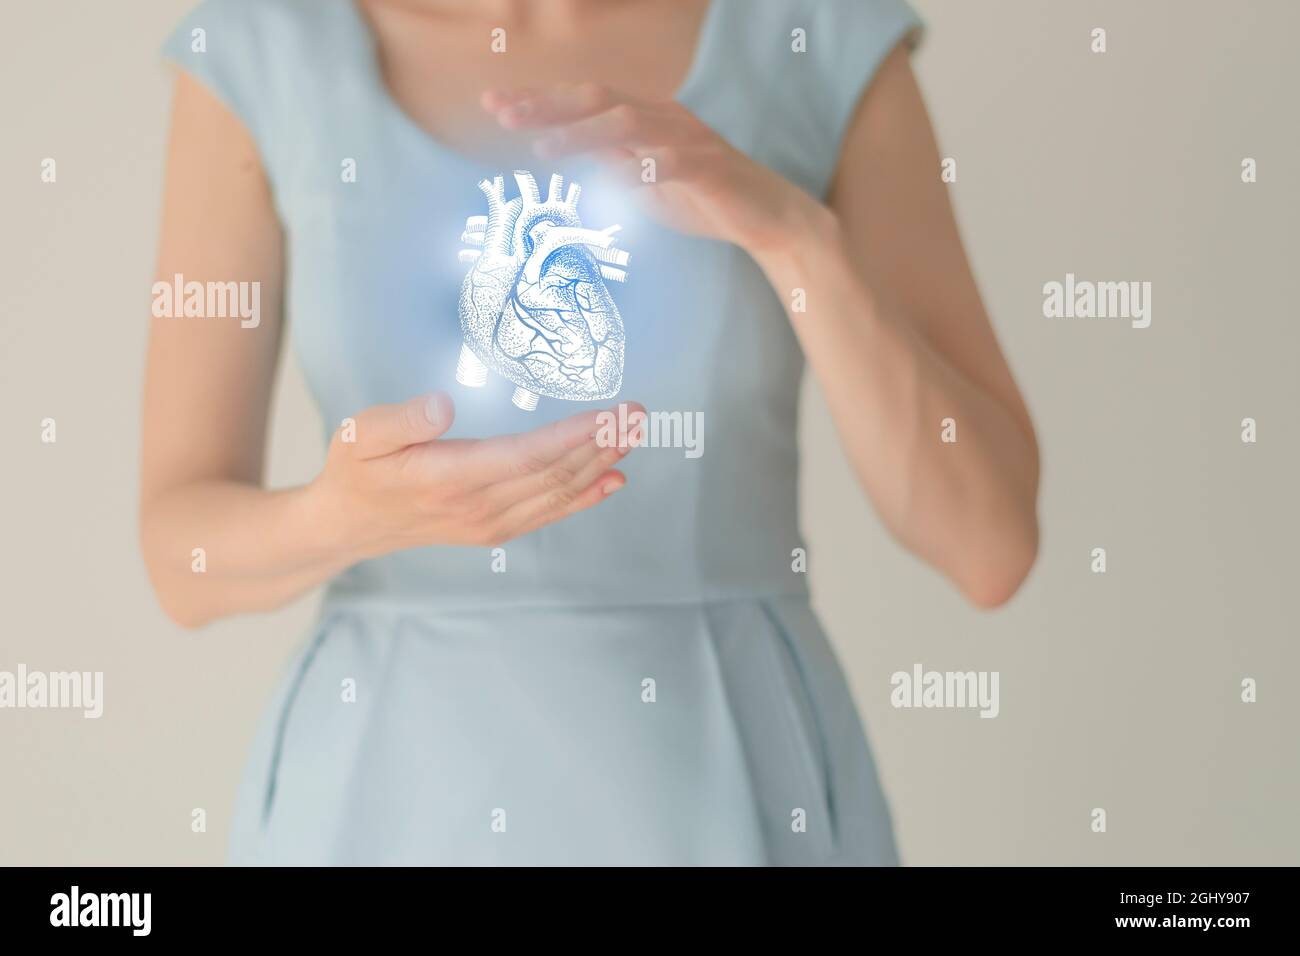 Nicht erkennbare weibliche Patientin in blauer Kleidung, hervorgehobenes, von Hand gezeichnetes Herz in den Händen. Das menschliche Herz stellt das Konzept in Frage. Stockfoto